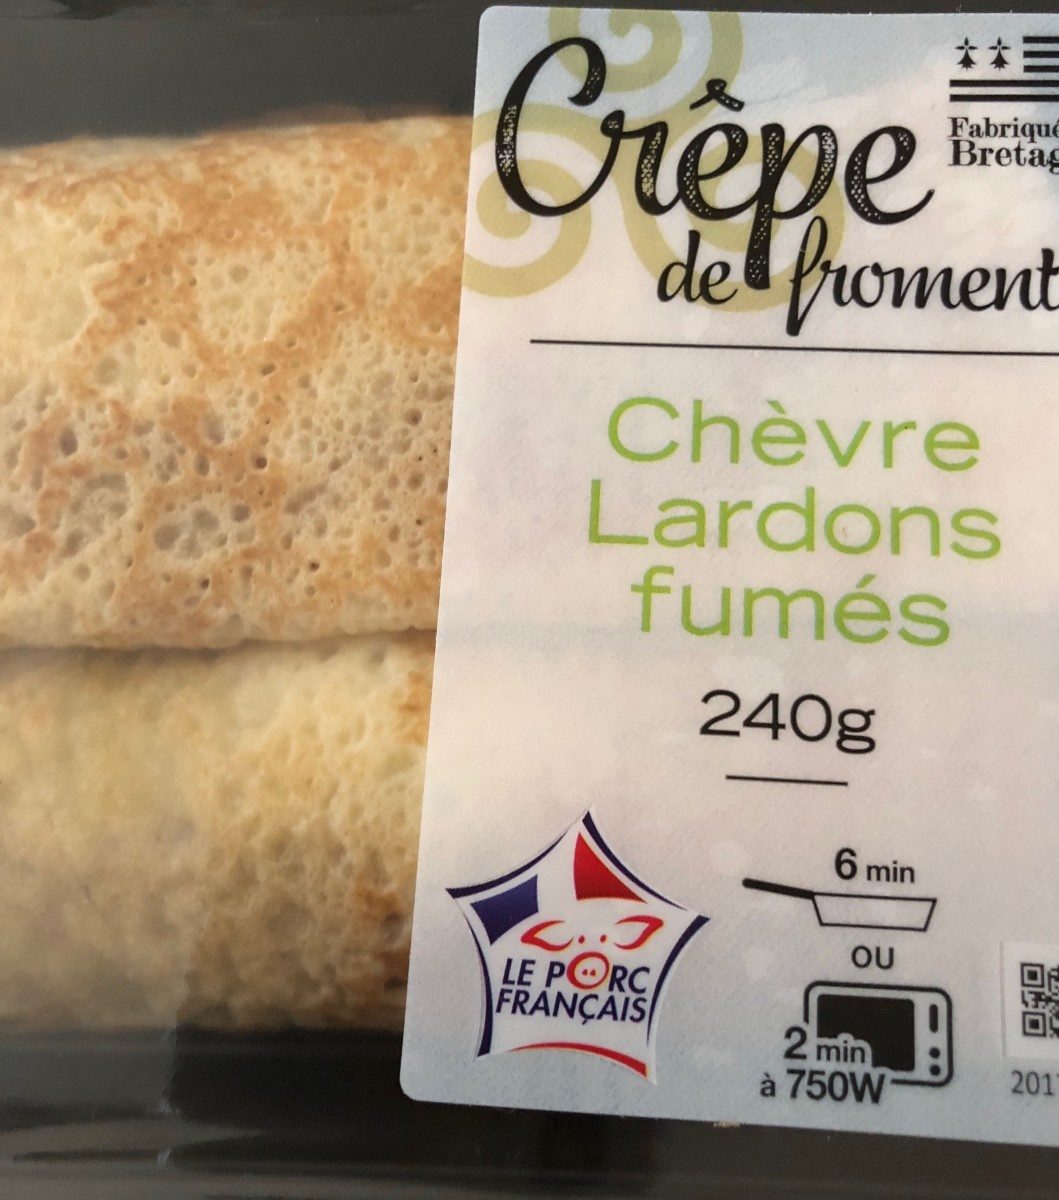 Crepe de froment chèvre lardons fumés - Produkt - fr